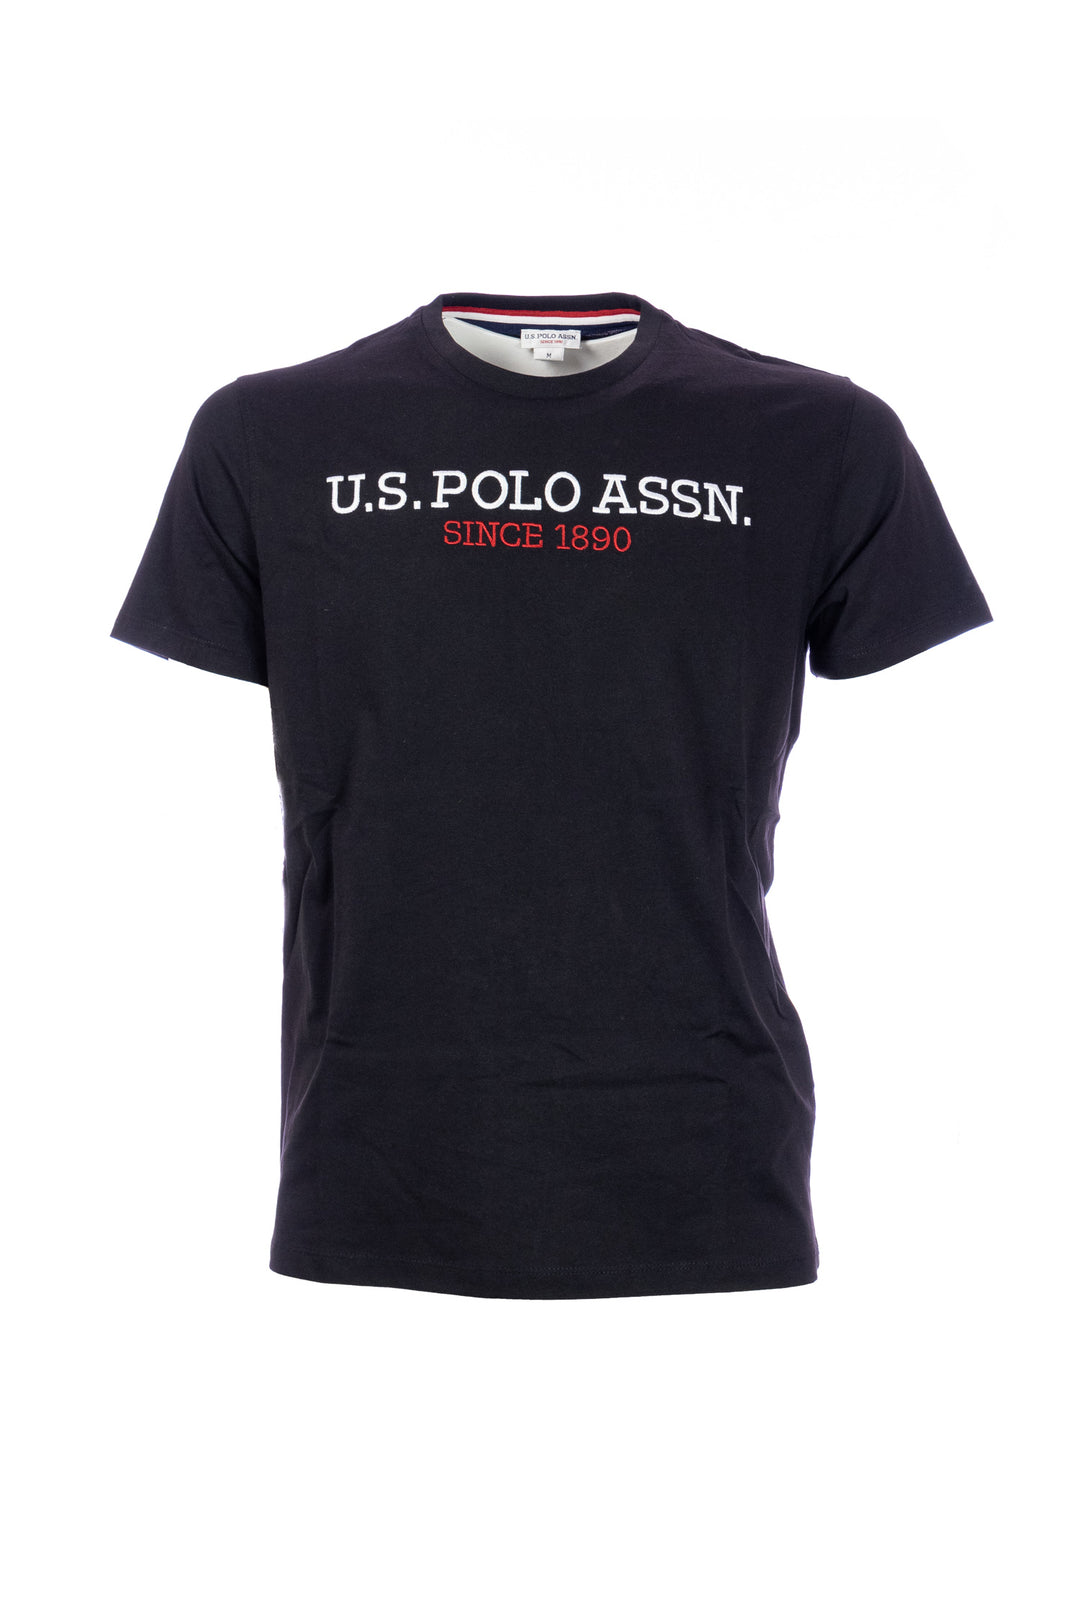 U.S. POLO ASSN. T-shirt nera in cotone con scritta U.S. Polo Assn. ricamato sul petto - Mancinelli 1954